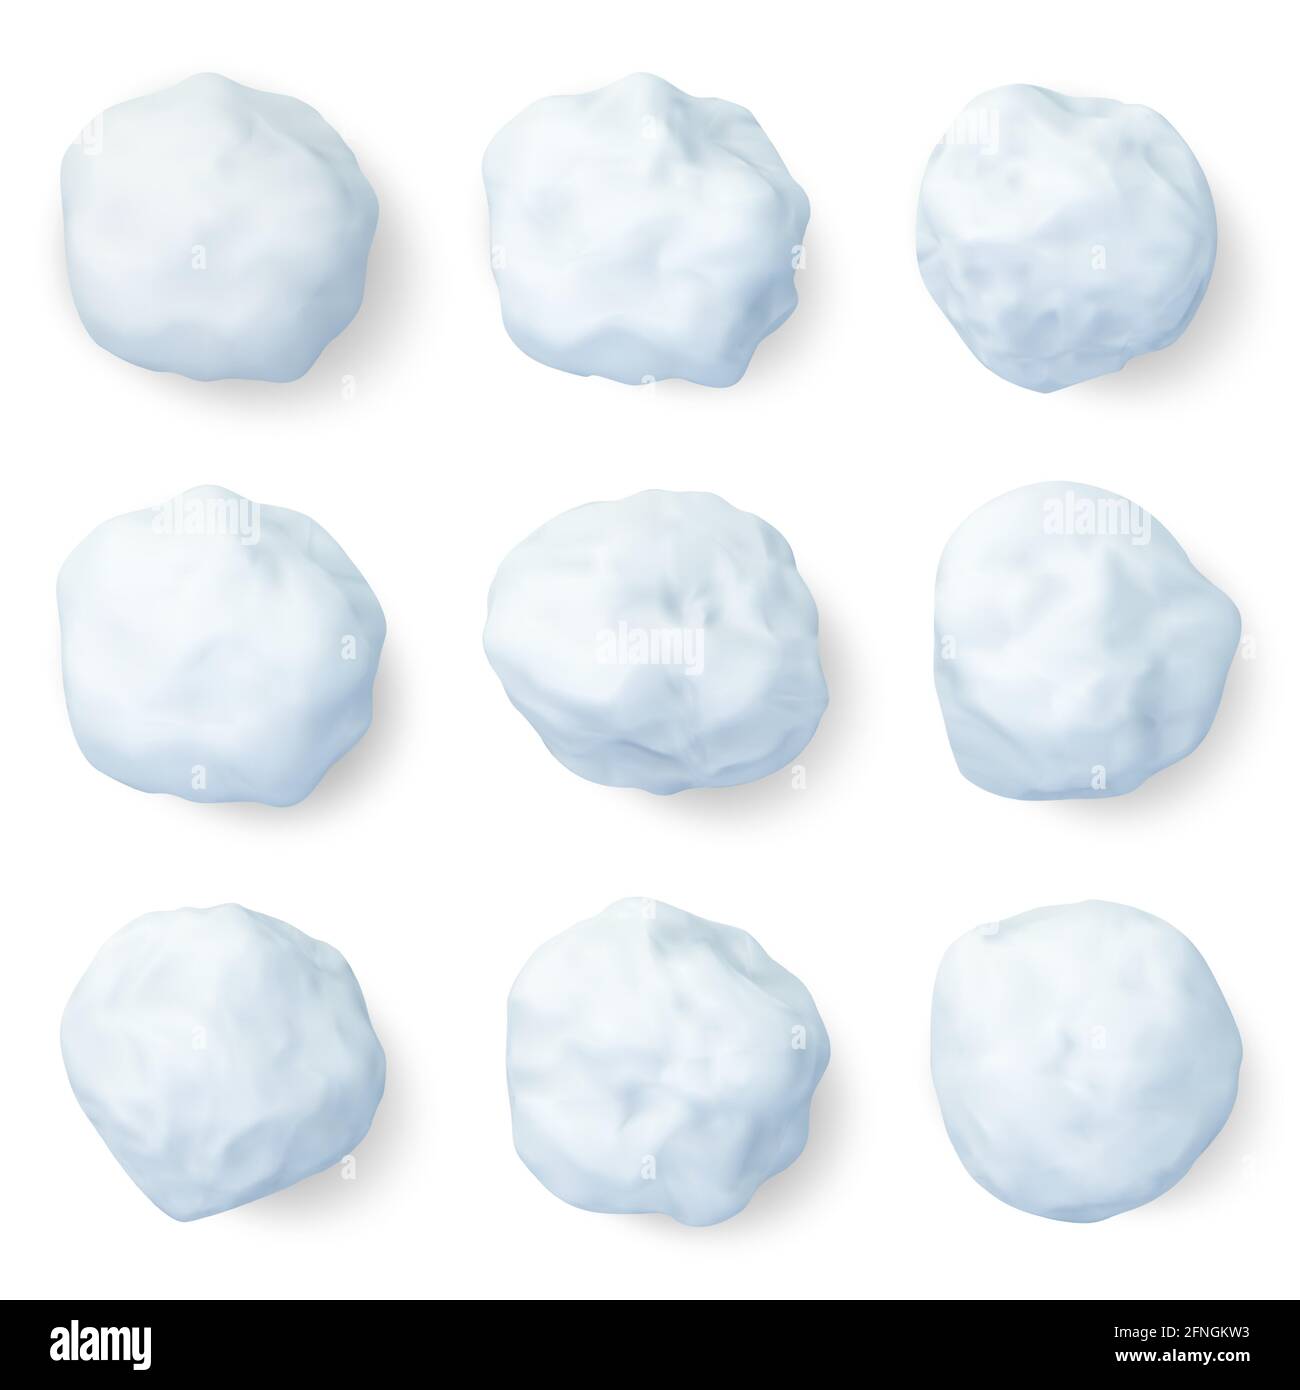 Palle di neve realistiche. Inverno palla di neve ghiacciata, natale decorazioni nevose o bambini inverno palle di neve elementi di gioco vettore illustrazione set. 3D bianco Illustrazione Vettoriale